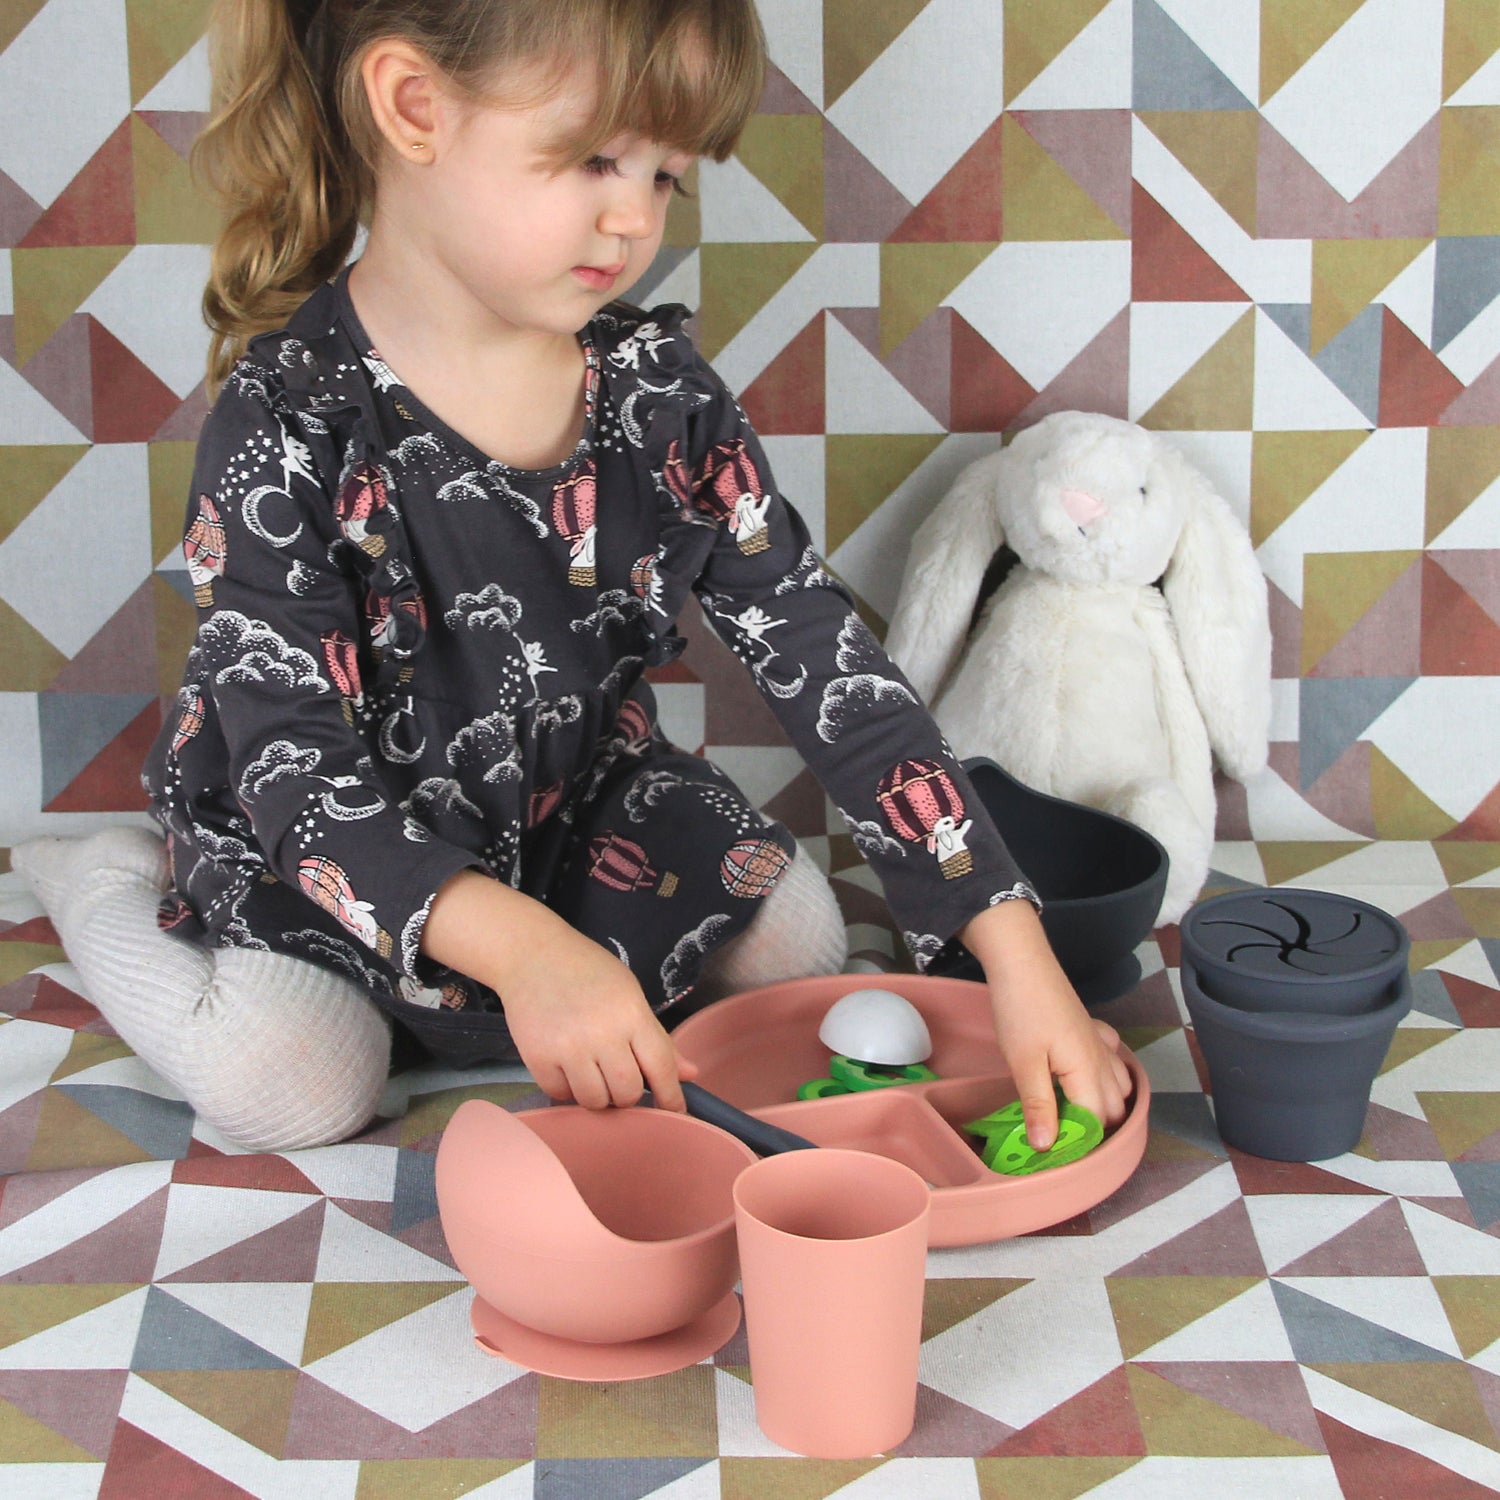 Set Completo de Alimentación para Bebé/Toddler - 6 piezas (Plato, Bowl, Cuchara, Tenedor, Babero y Vaso para Snacks) - Palo Rosa